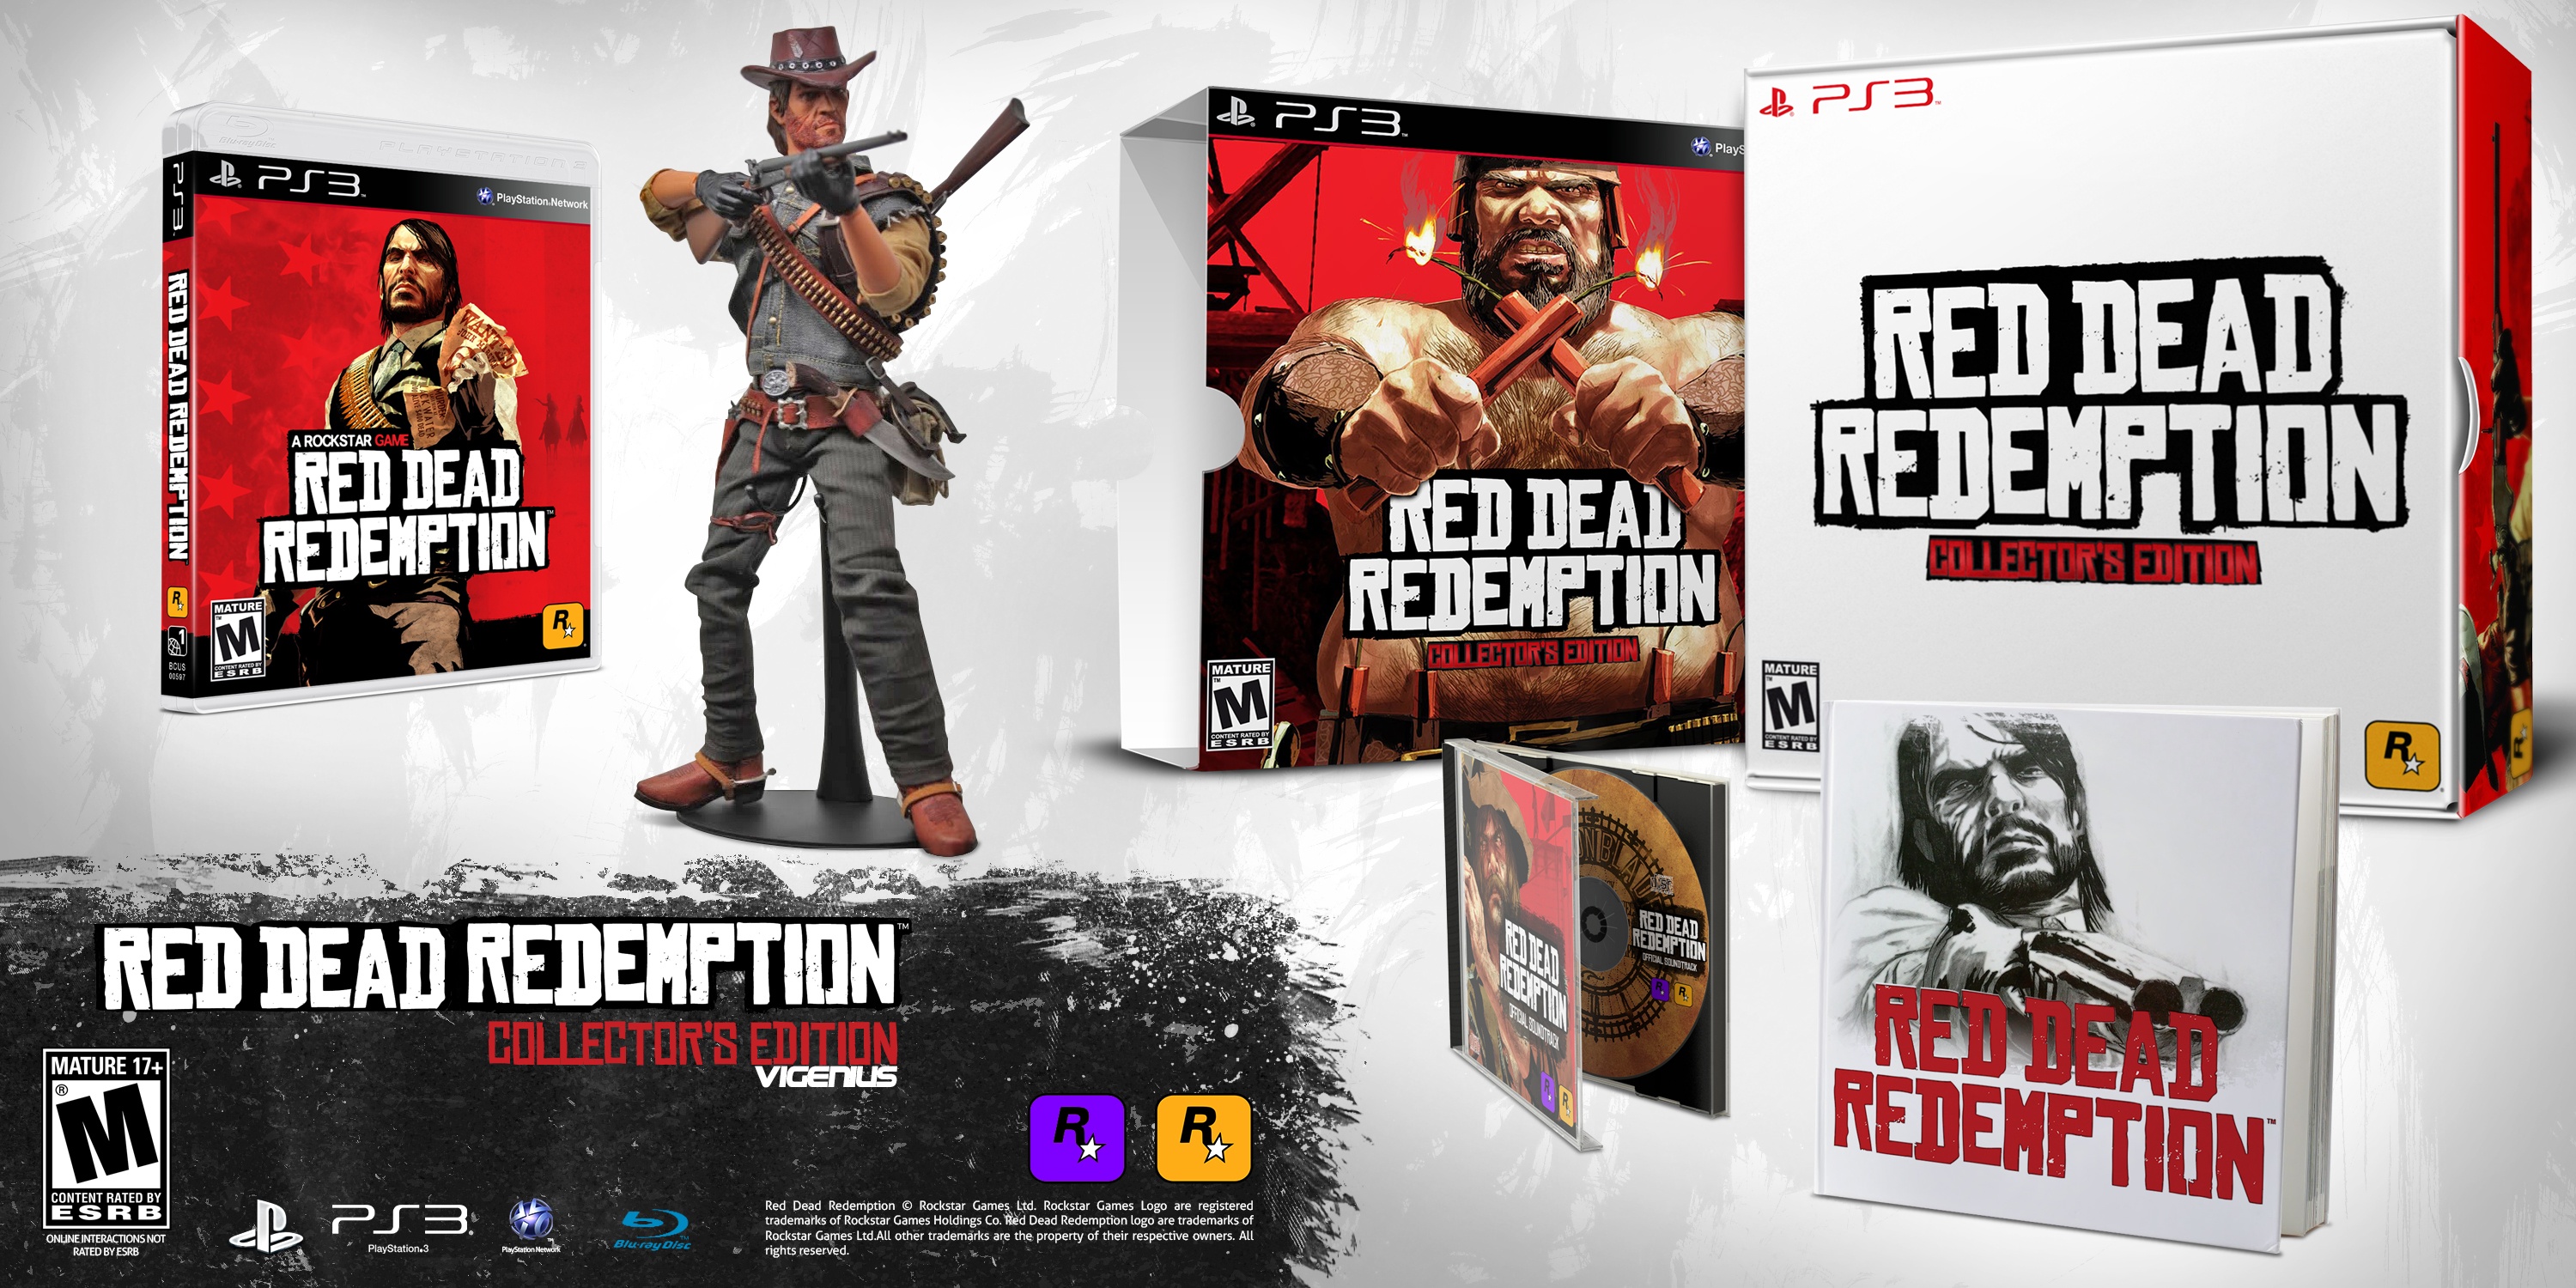 atomar køretøj oversvømmelse Red Dead Redemption Collector's Edition PlayStation 3 Box Art Cover by  Vigenius